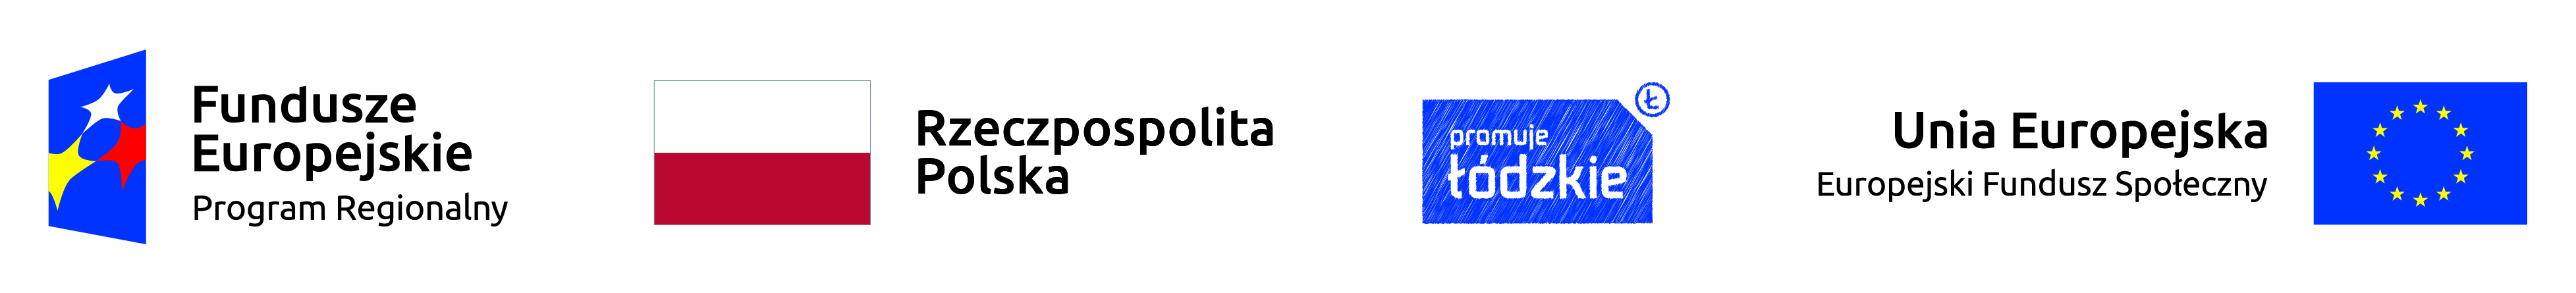 Ciąg logotypów przedstawiający w kolejności od lewej do prawej: logotyp Fundusze Europejskie Program Regionalny, Flaga Rzeczpospolitej Polskiej, logotyp województwa łódzkiego, logotyp Unia Europejska - Europejski Fundusz Społeczny.